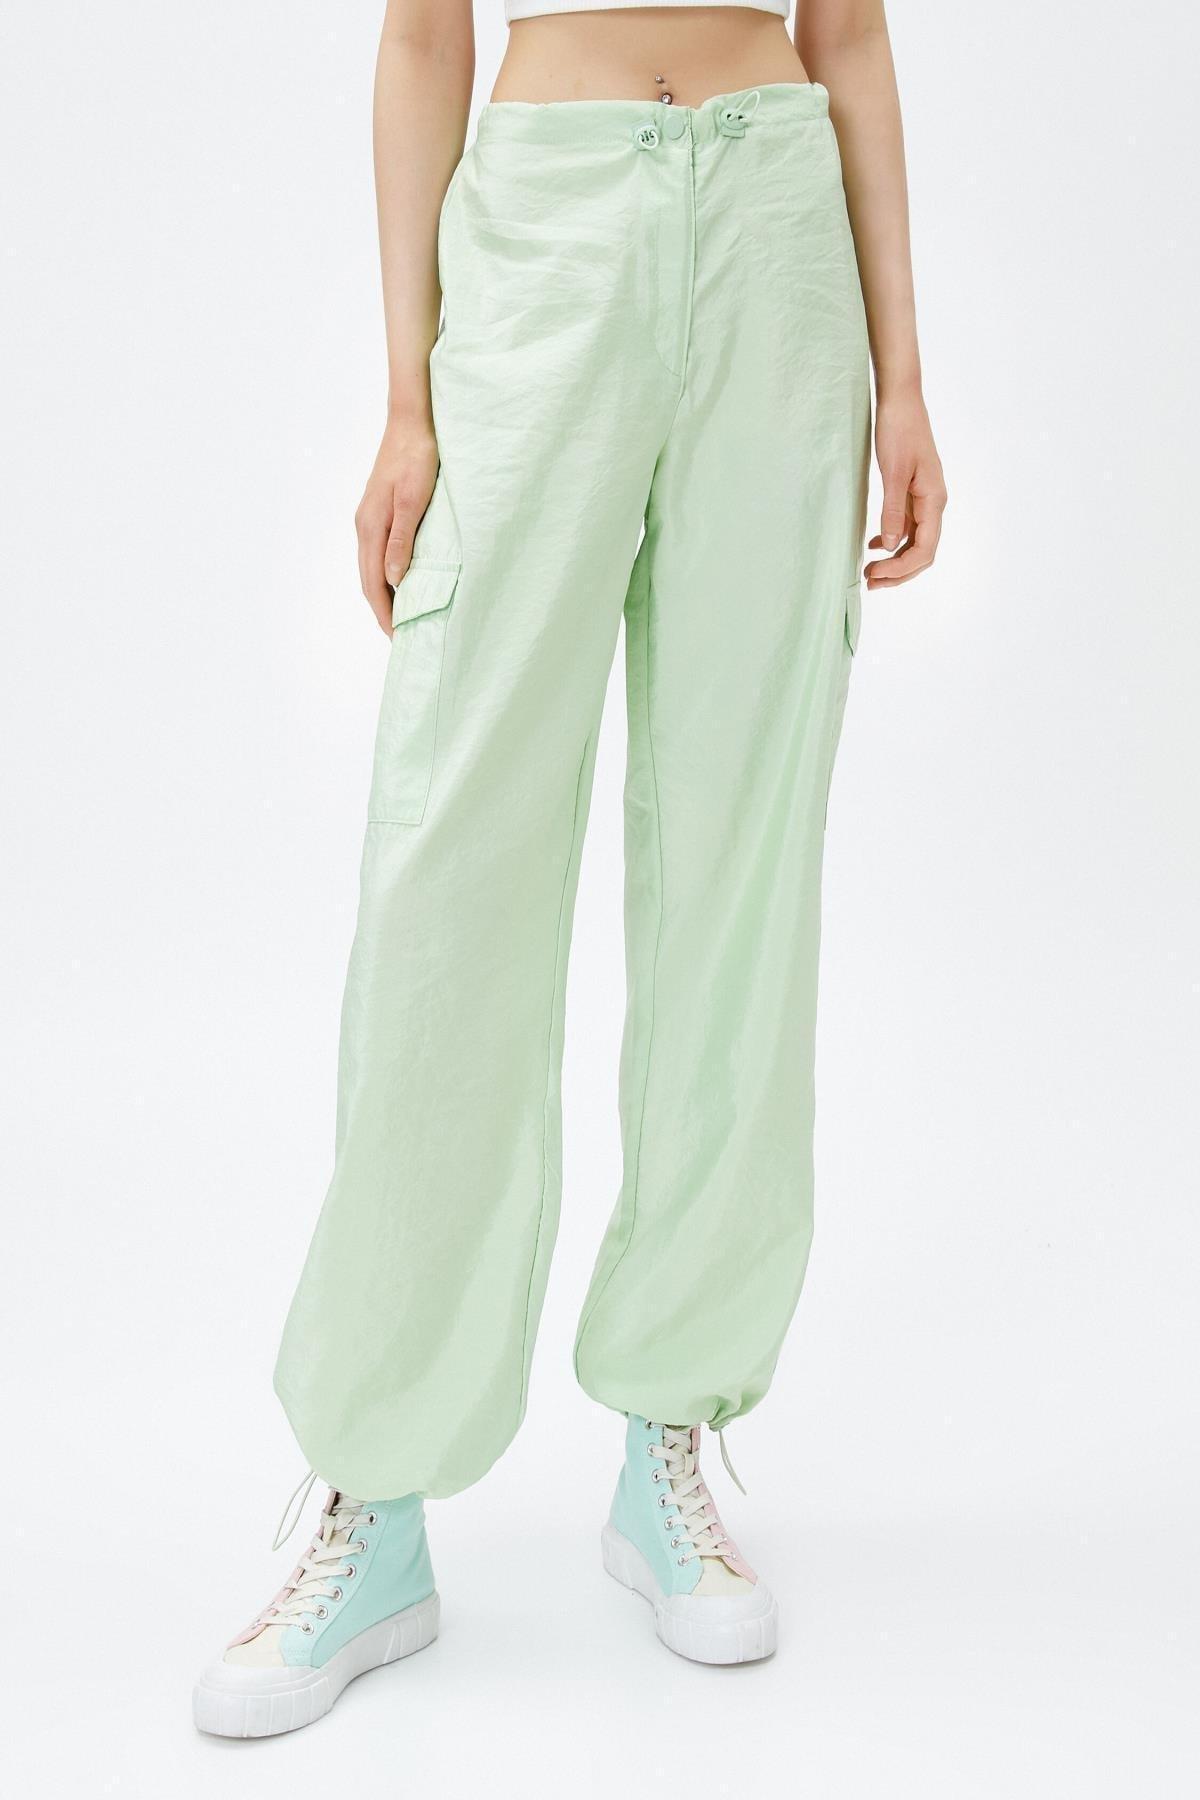 Koton - Green Cargo Jeans